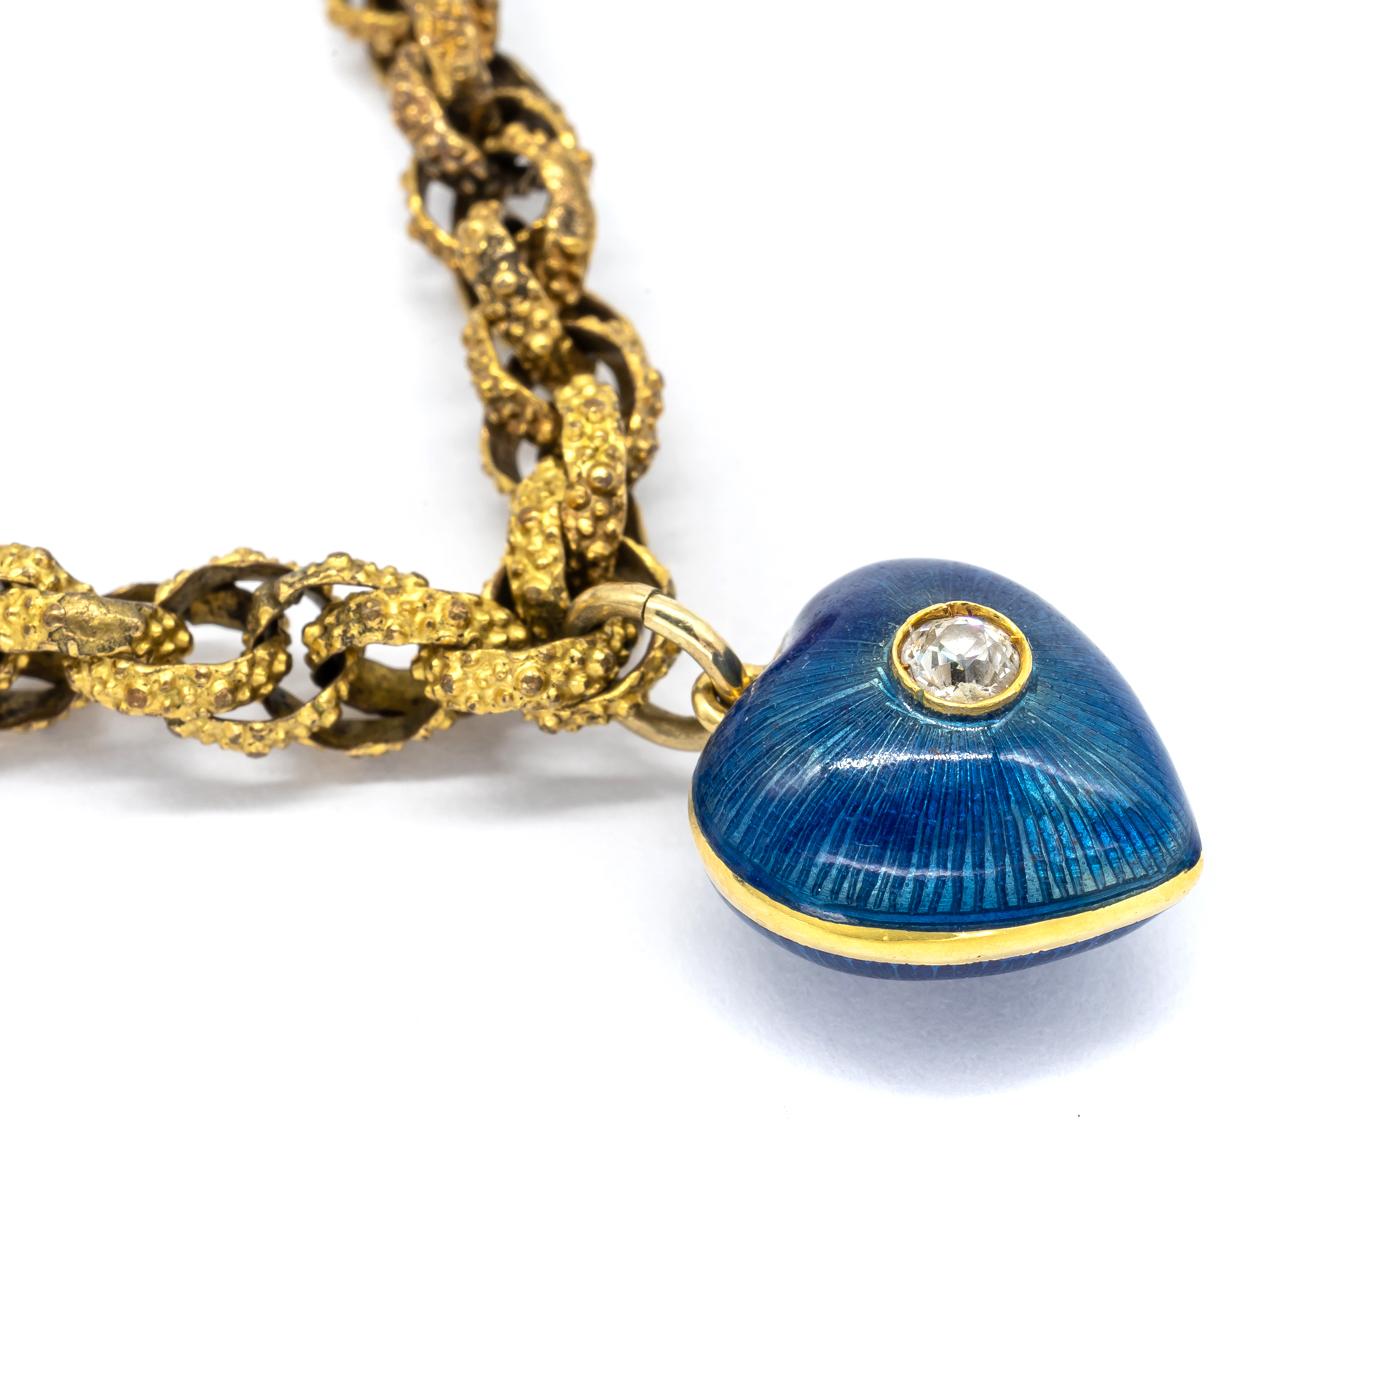 Ein goldenes Prince-of-Wales-Kettenarmband mit granulierten Gliedern, einem Verschluss mit einer natürlichen Perle und einem Diamanten im Altschliff sowie einem modernen blauen Guilloche-Emaille-Herzanhänger mit einem zentralen Diamanten im